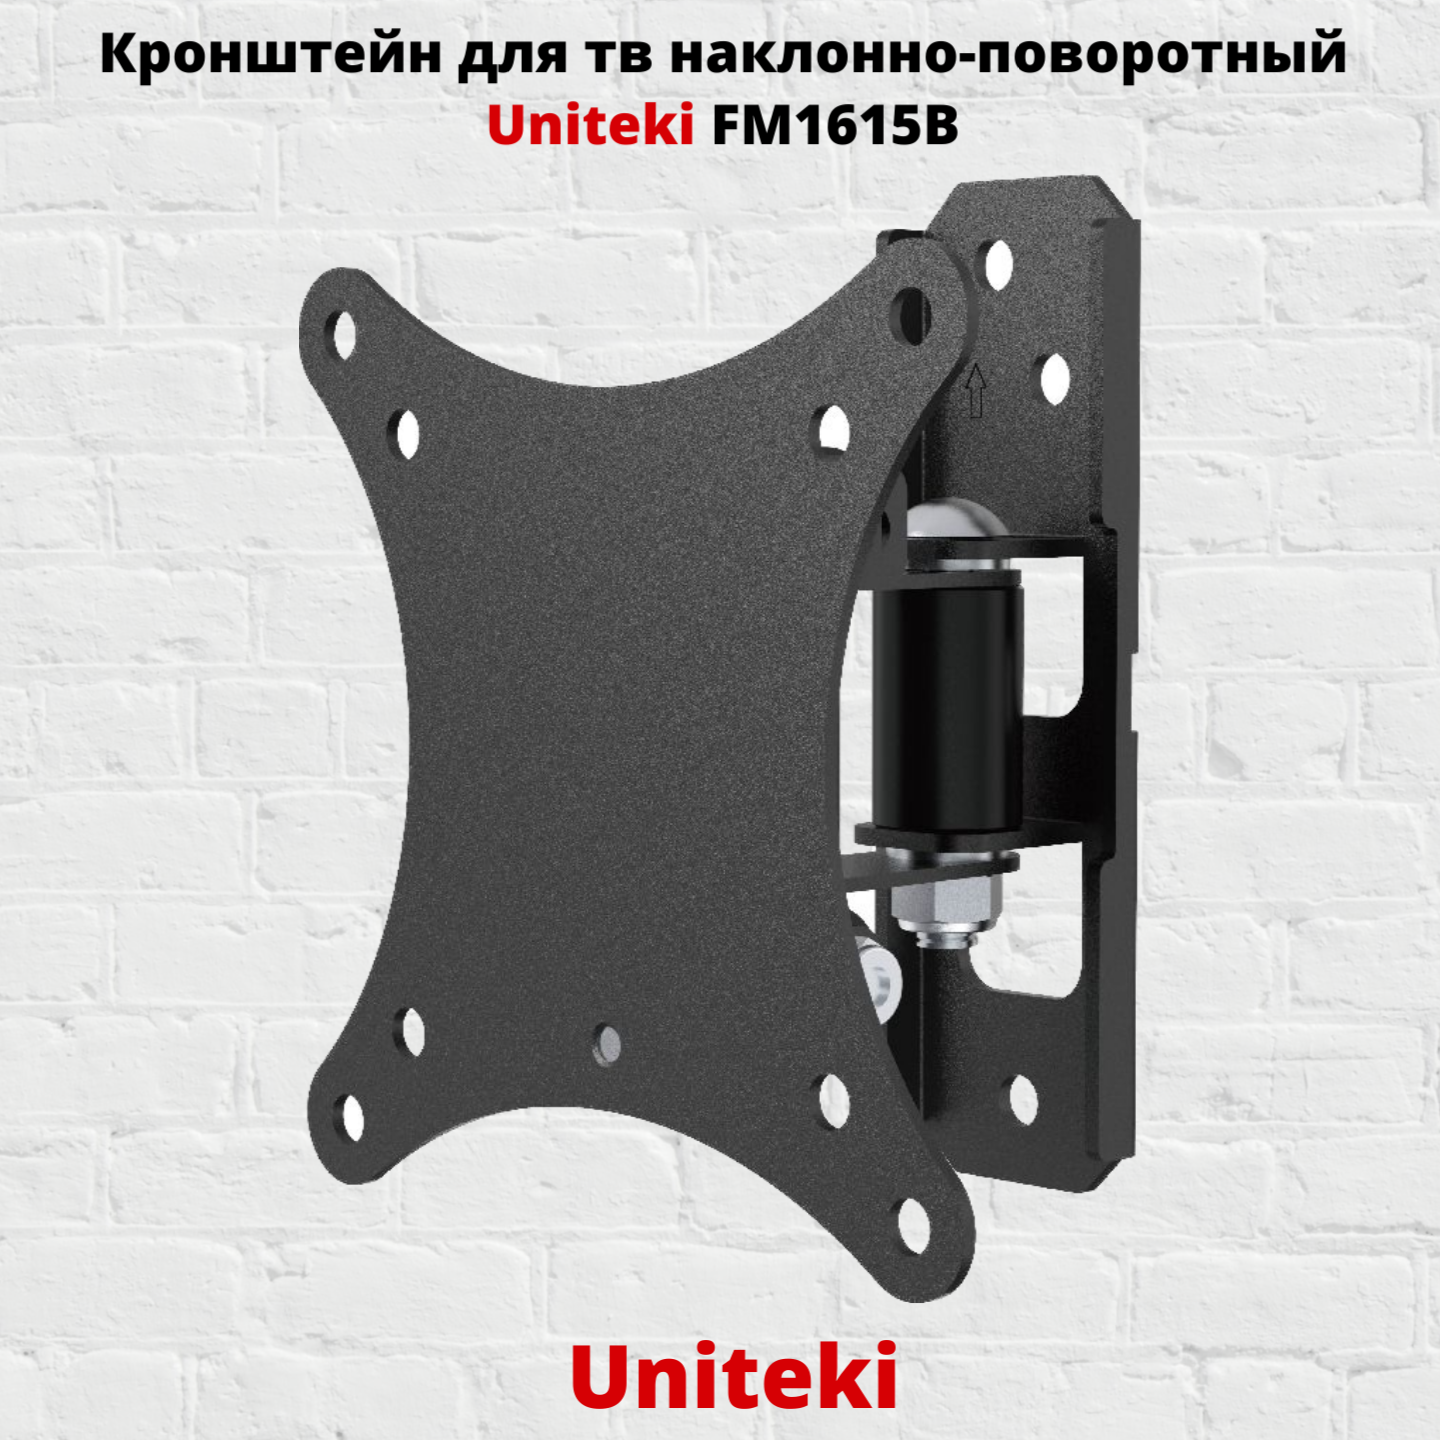 Наклонно-поворотный кронштейн для телевизора Uniteki FM1615B 13-27 черный